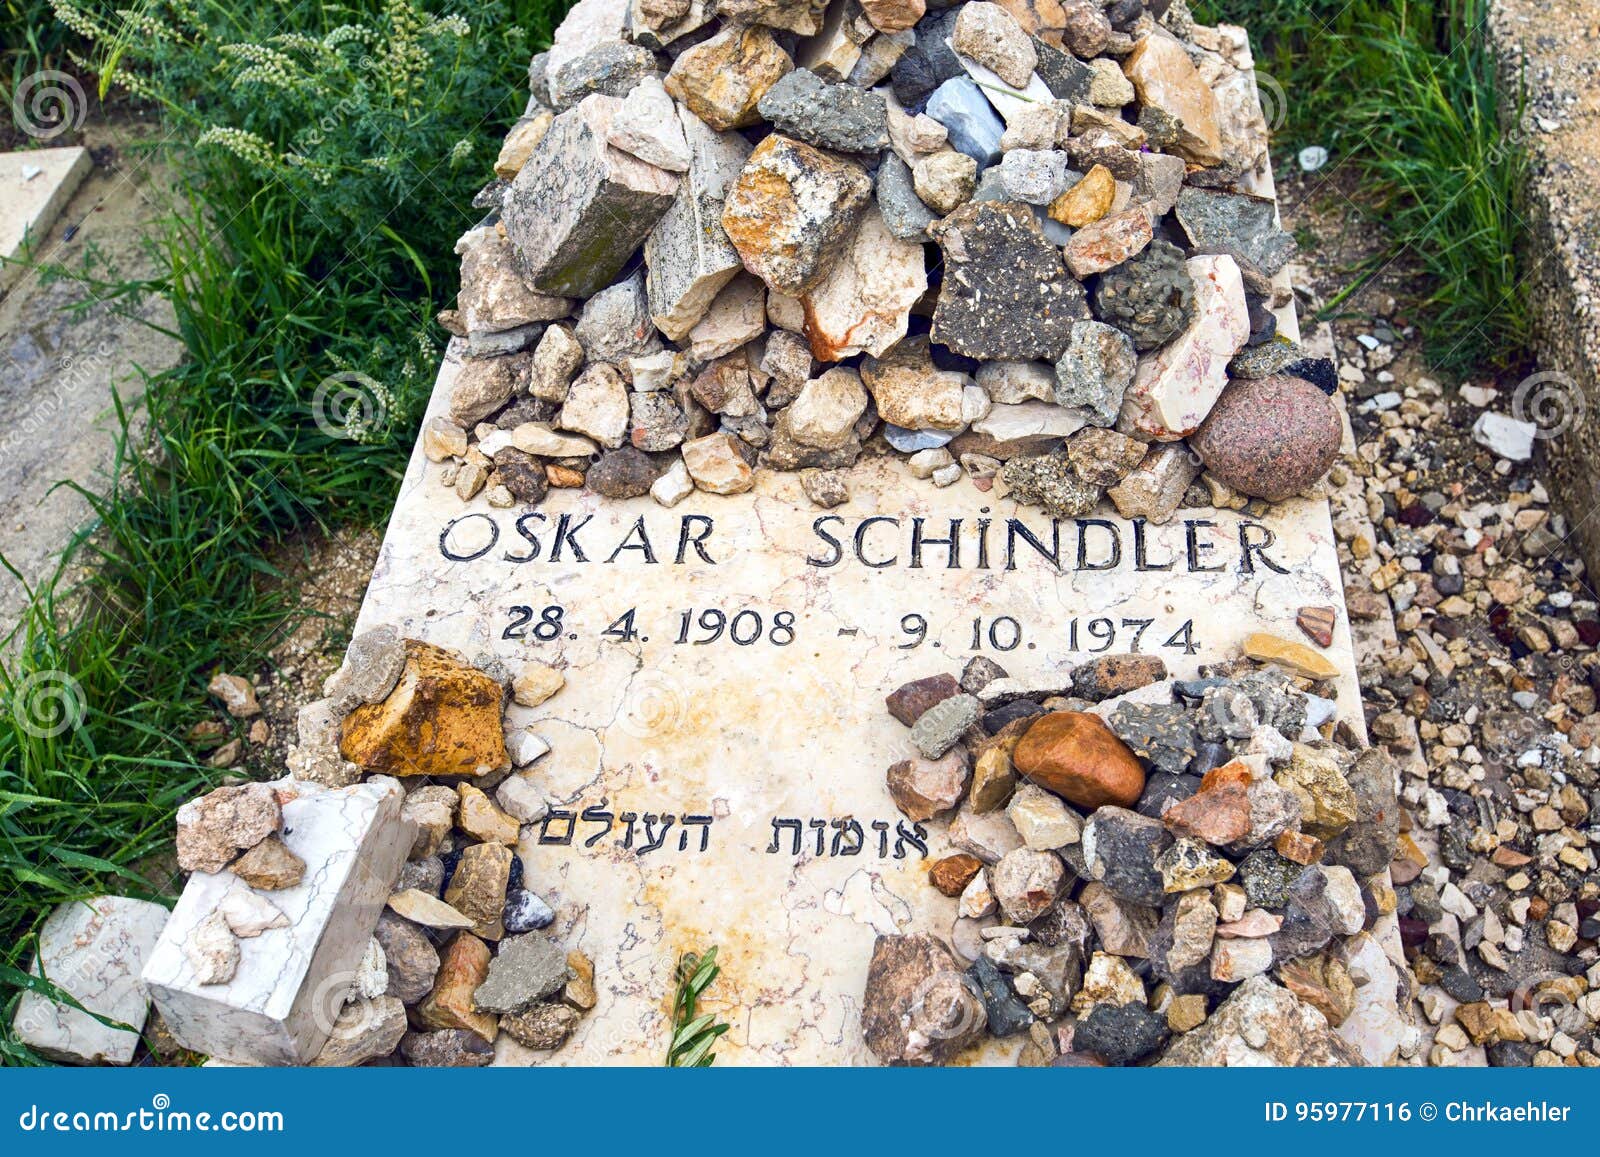 oskar-schindlers-het-graf-jeruzalem-zet-zion-op-95977116.jpg